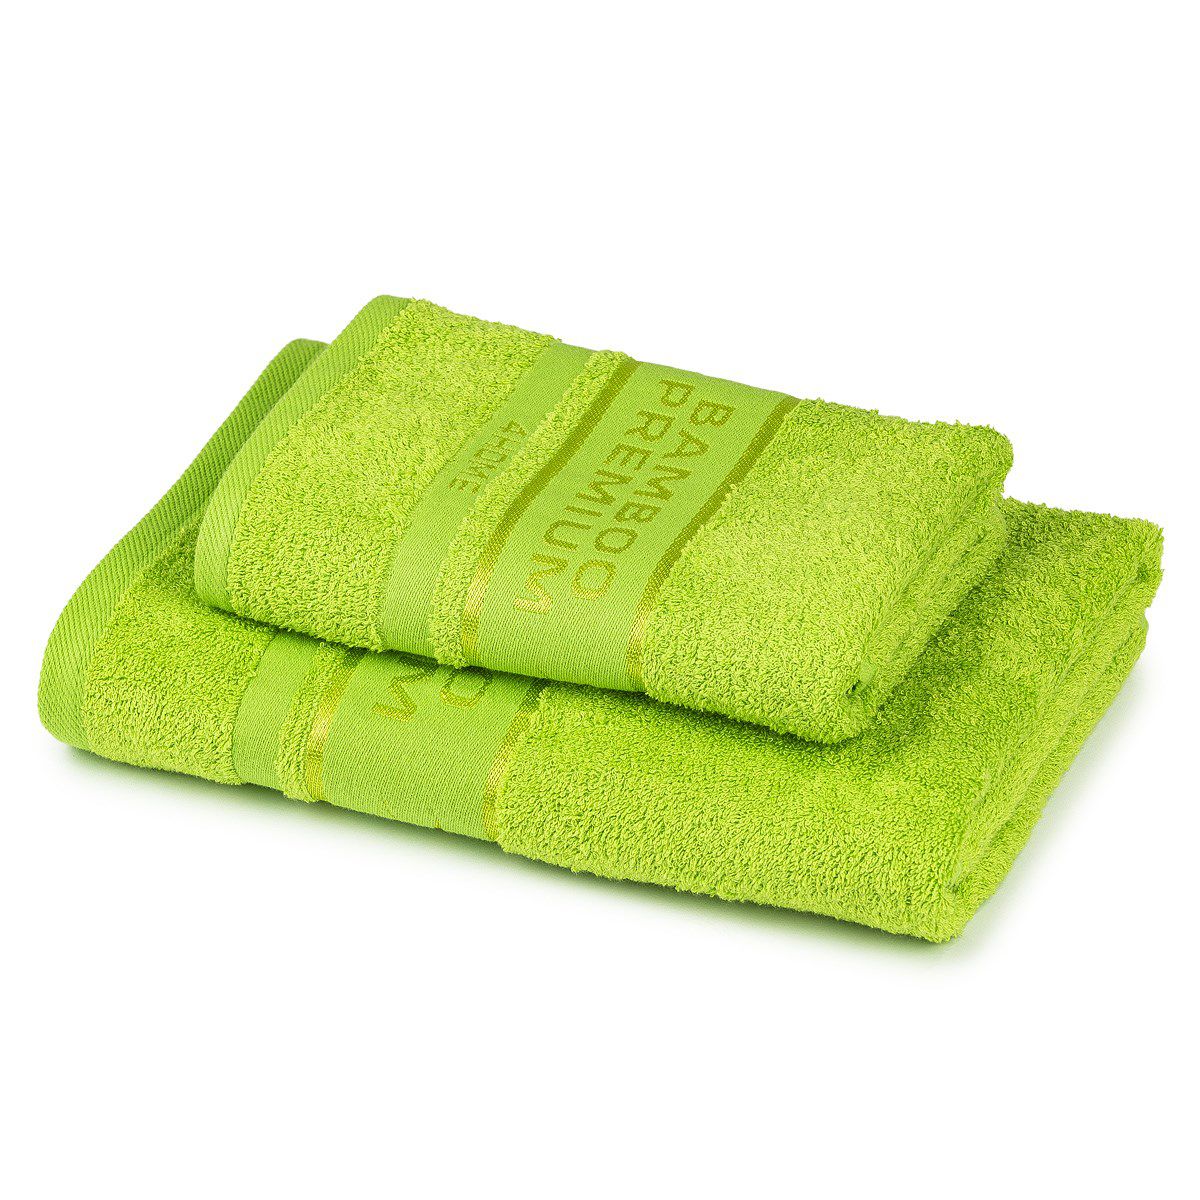 4Home Sada Bamboo Premium osuška a ručník zelená, 70 x 140 cm, 50 x 100 cm - 4home.cz